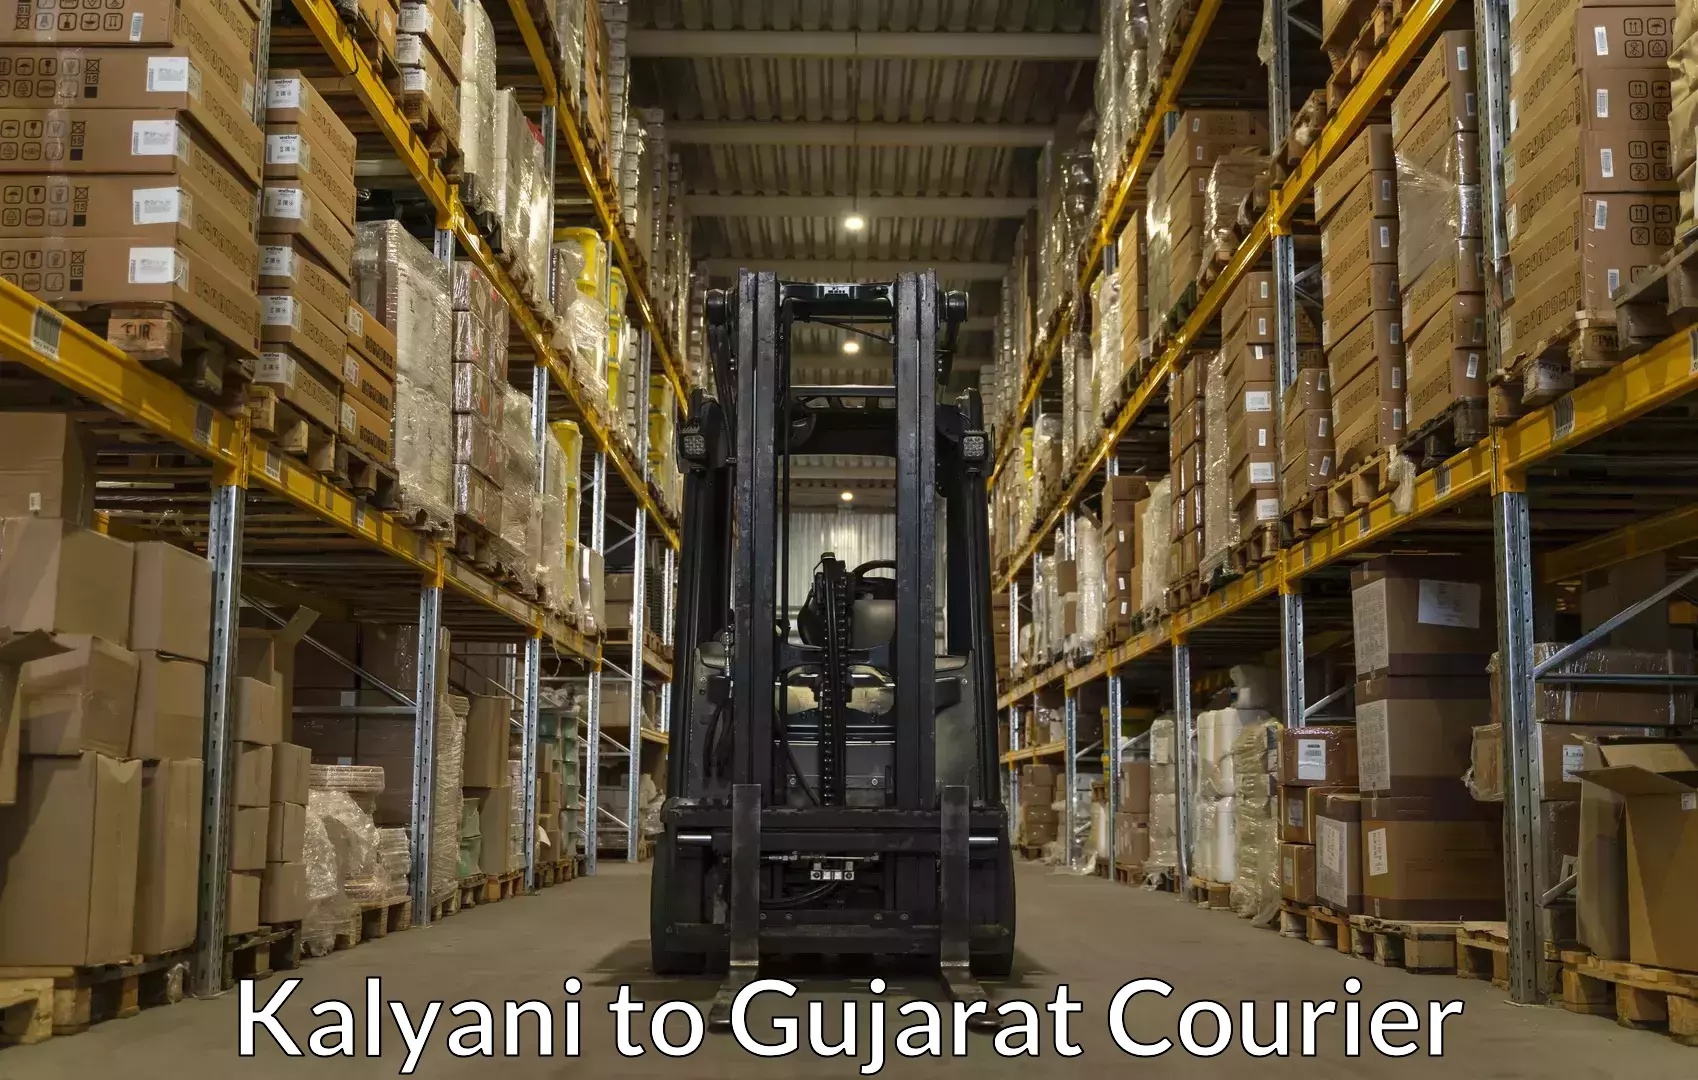 Luggage transport deals Kalyani to IIIT Vadodara